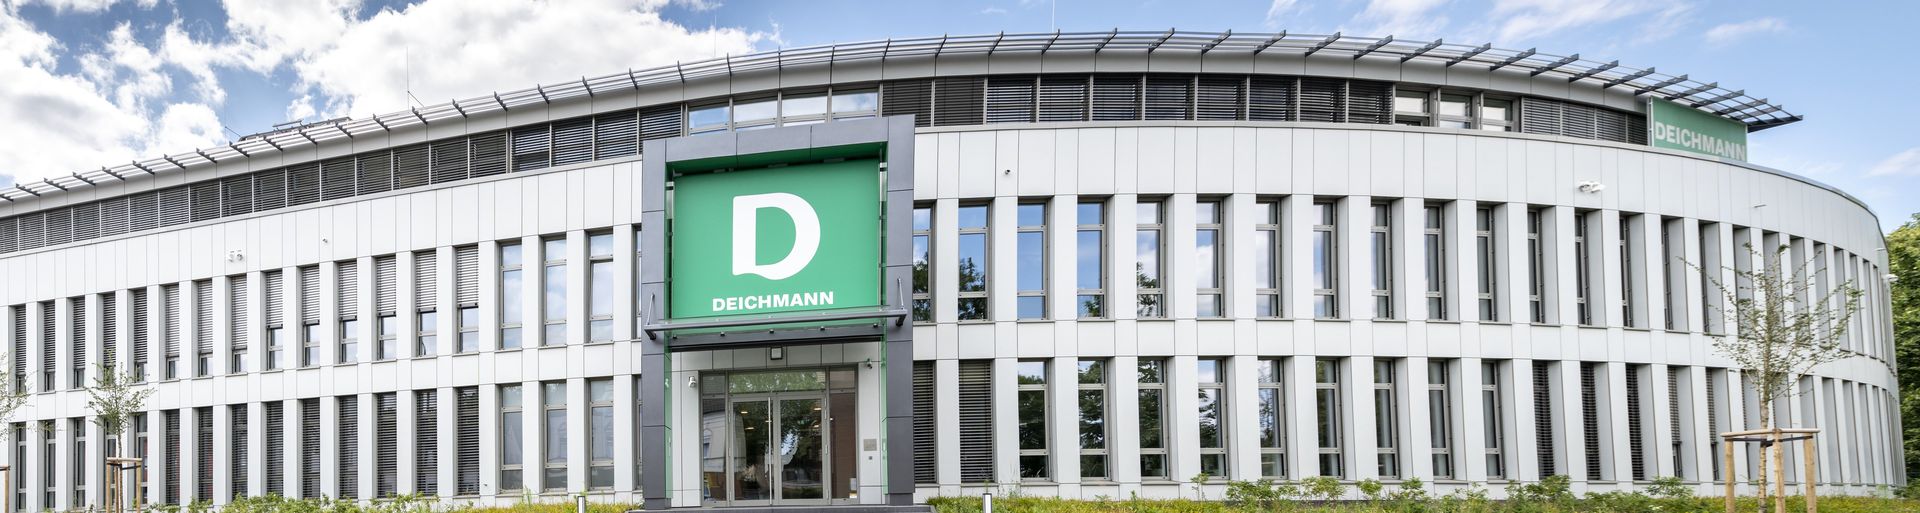 Deichmann SE Verwaltung in Essen, Nordrhein-Westfalen, Vorderansicht des dreigeschossiges Verwaltungsgebäude mit Tiefgarage